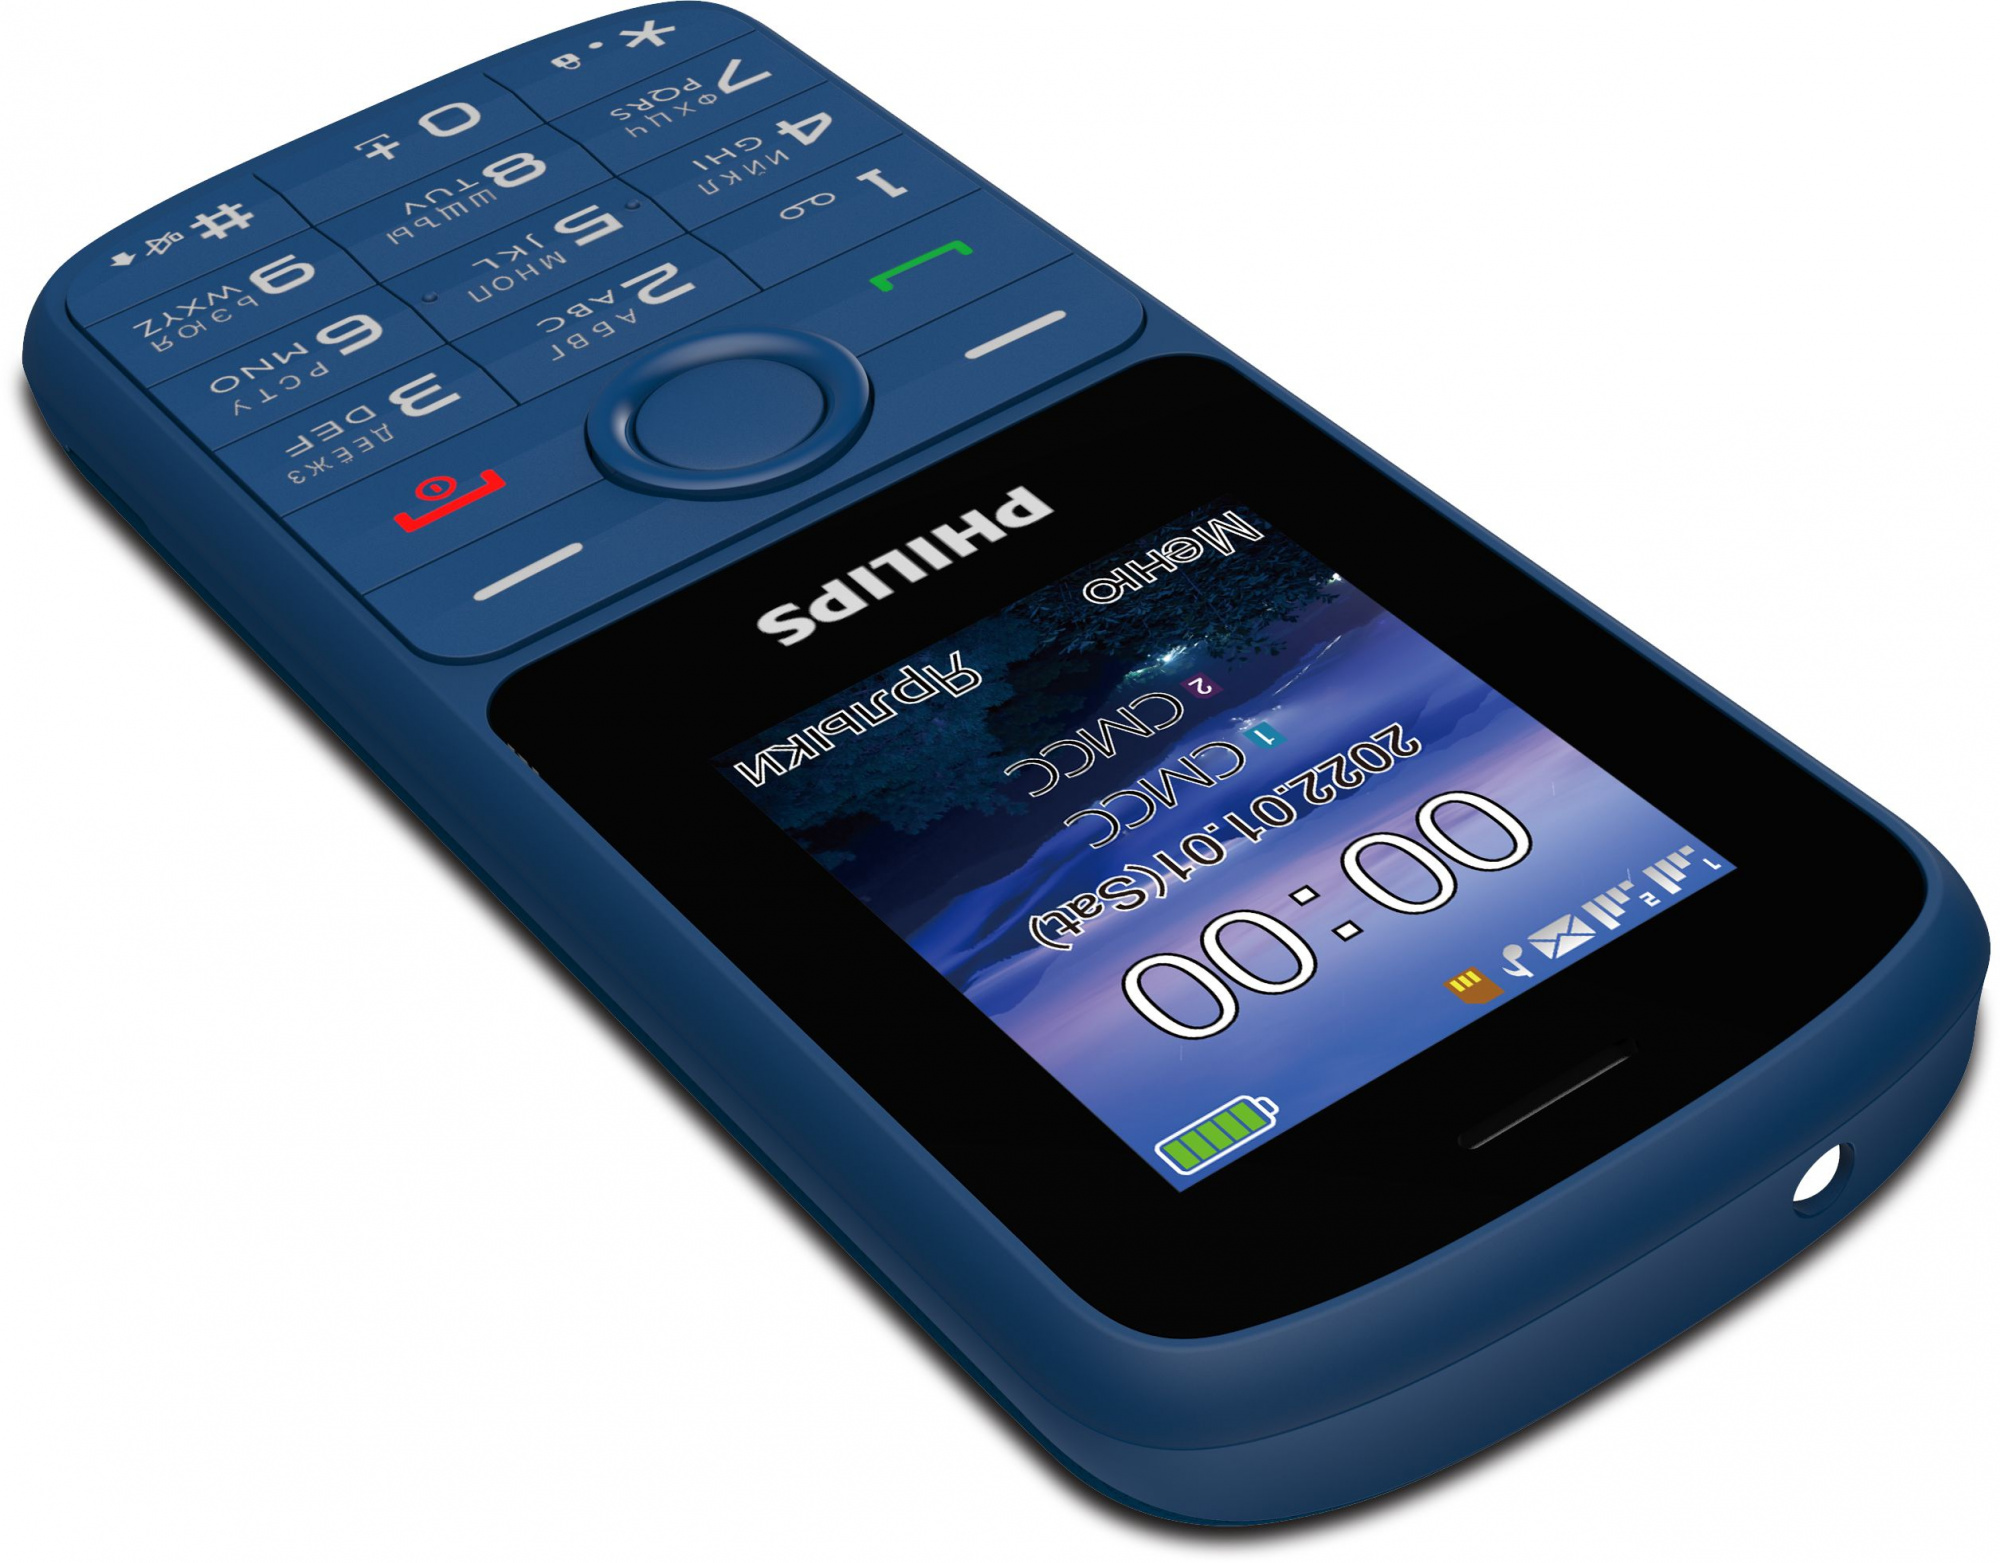 Купить Мобильный телефон Philips E2101 Xenium синий моноблок 2Sim 1.77